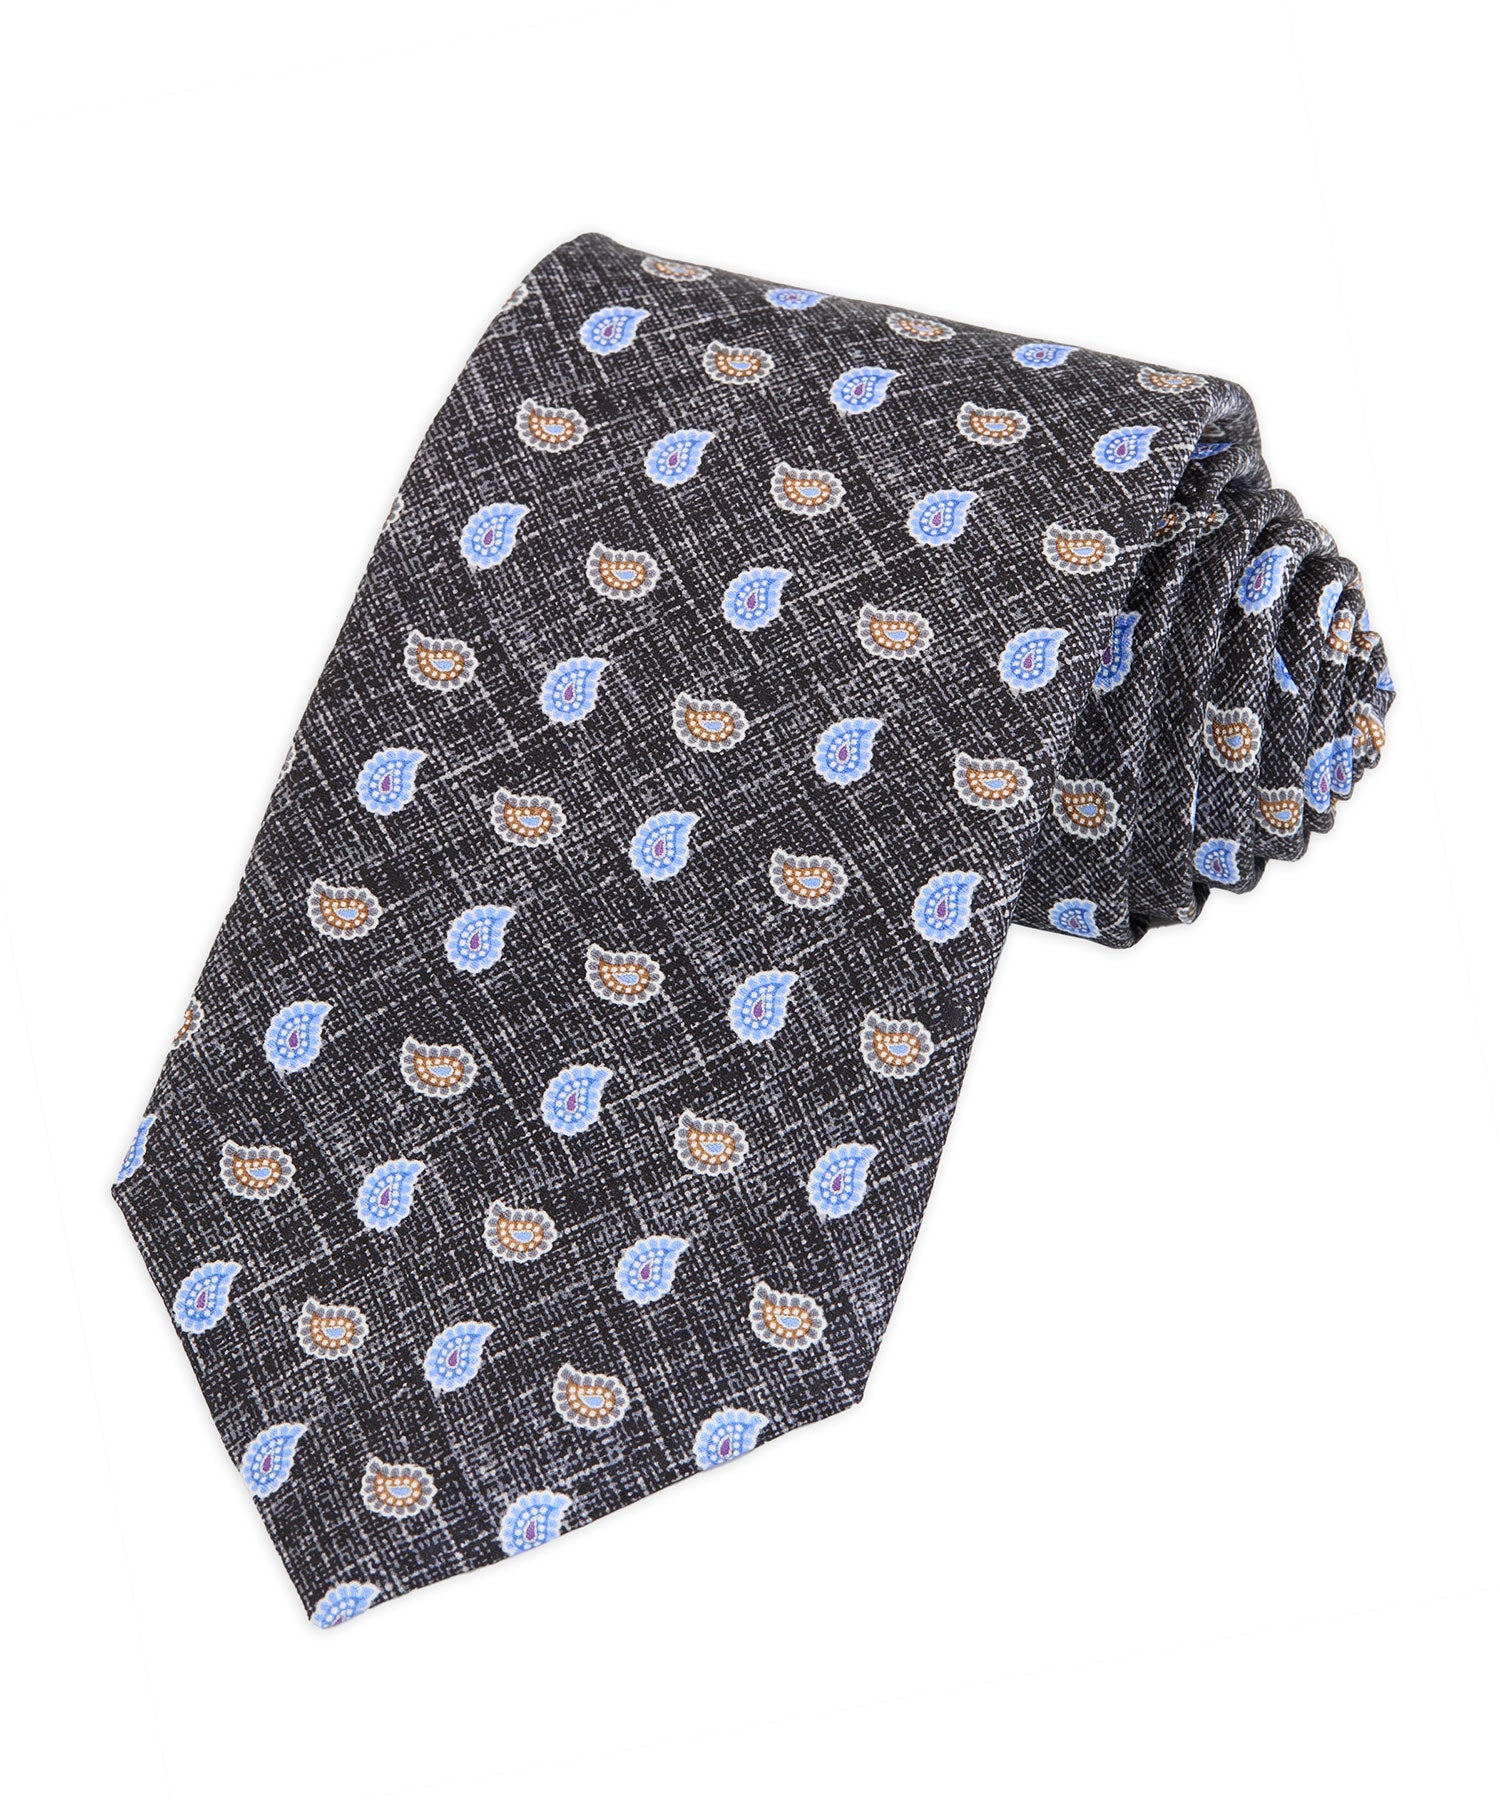 JZ Richards Pocket Paisley Tie, Men's Big & Tall